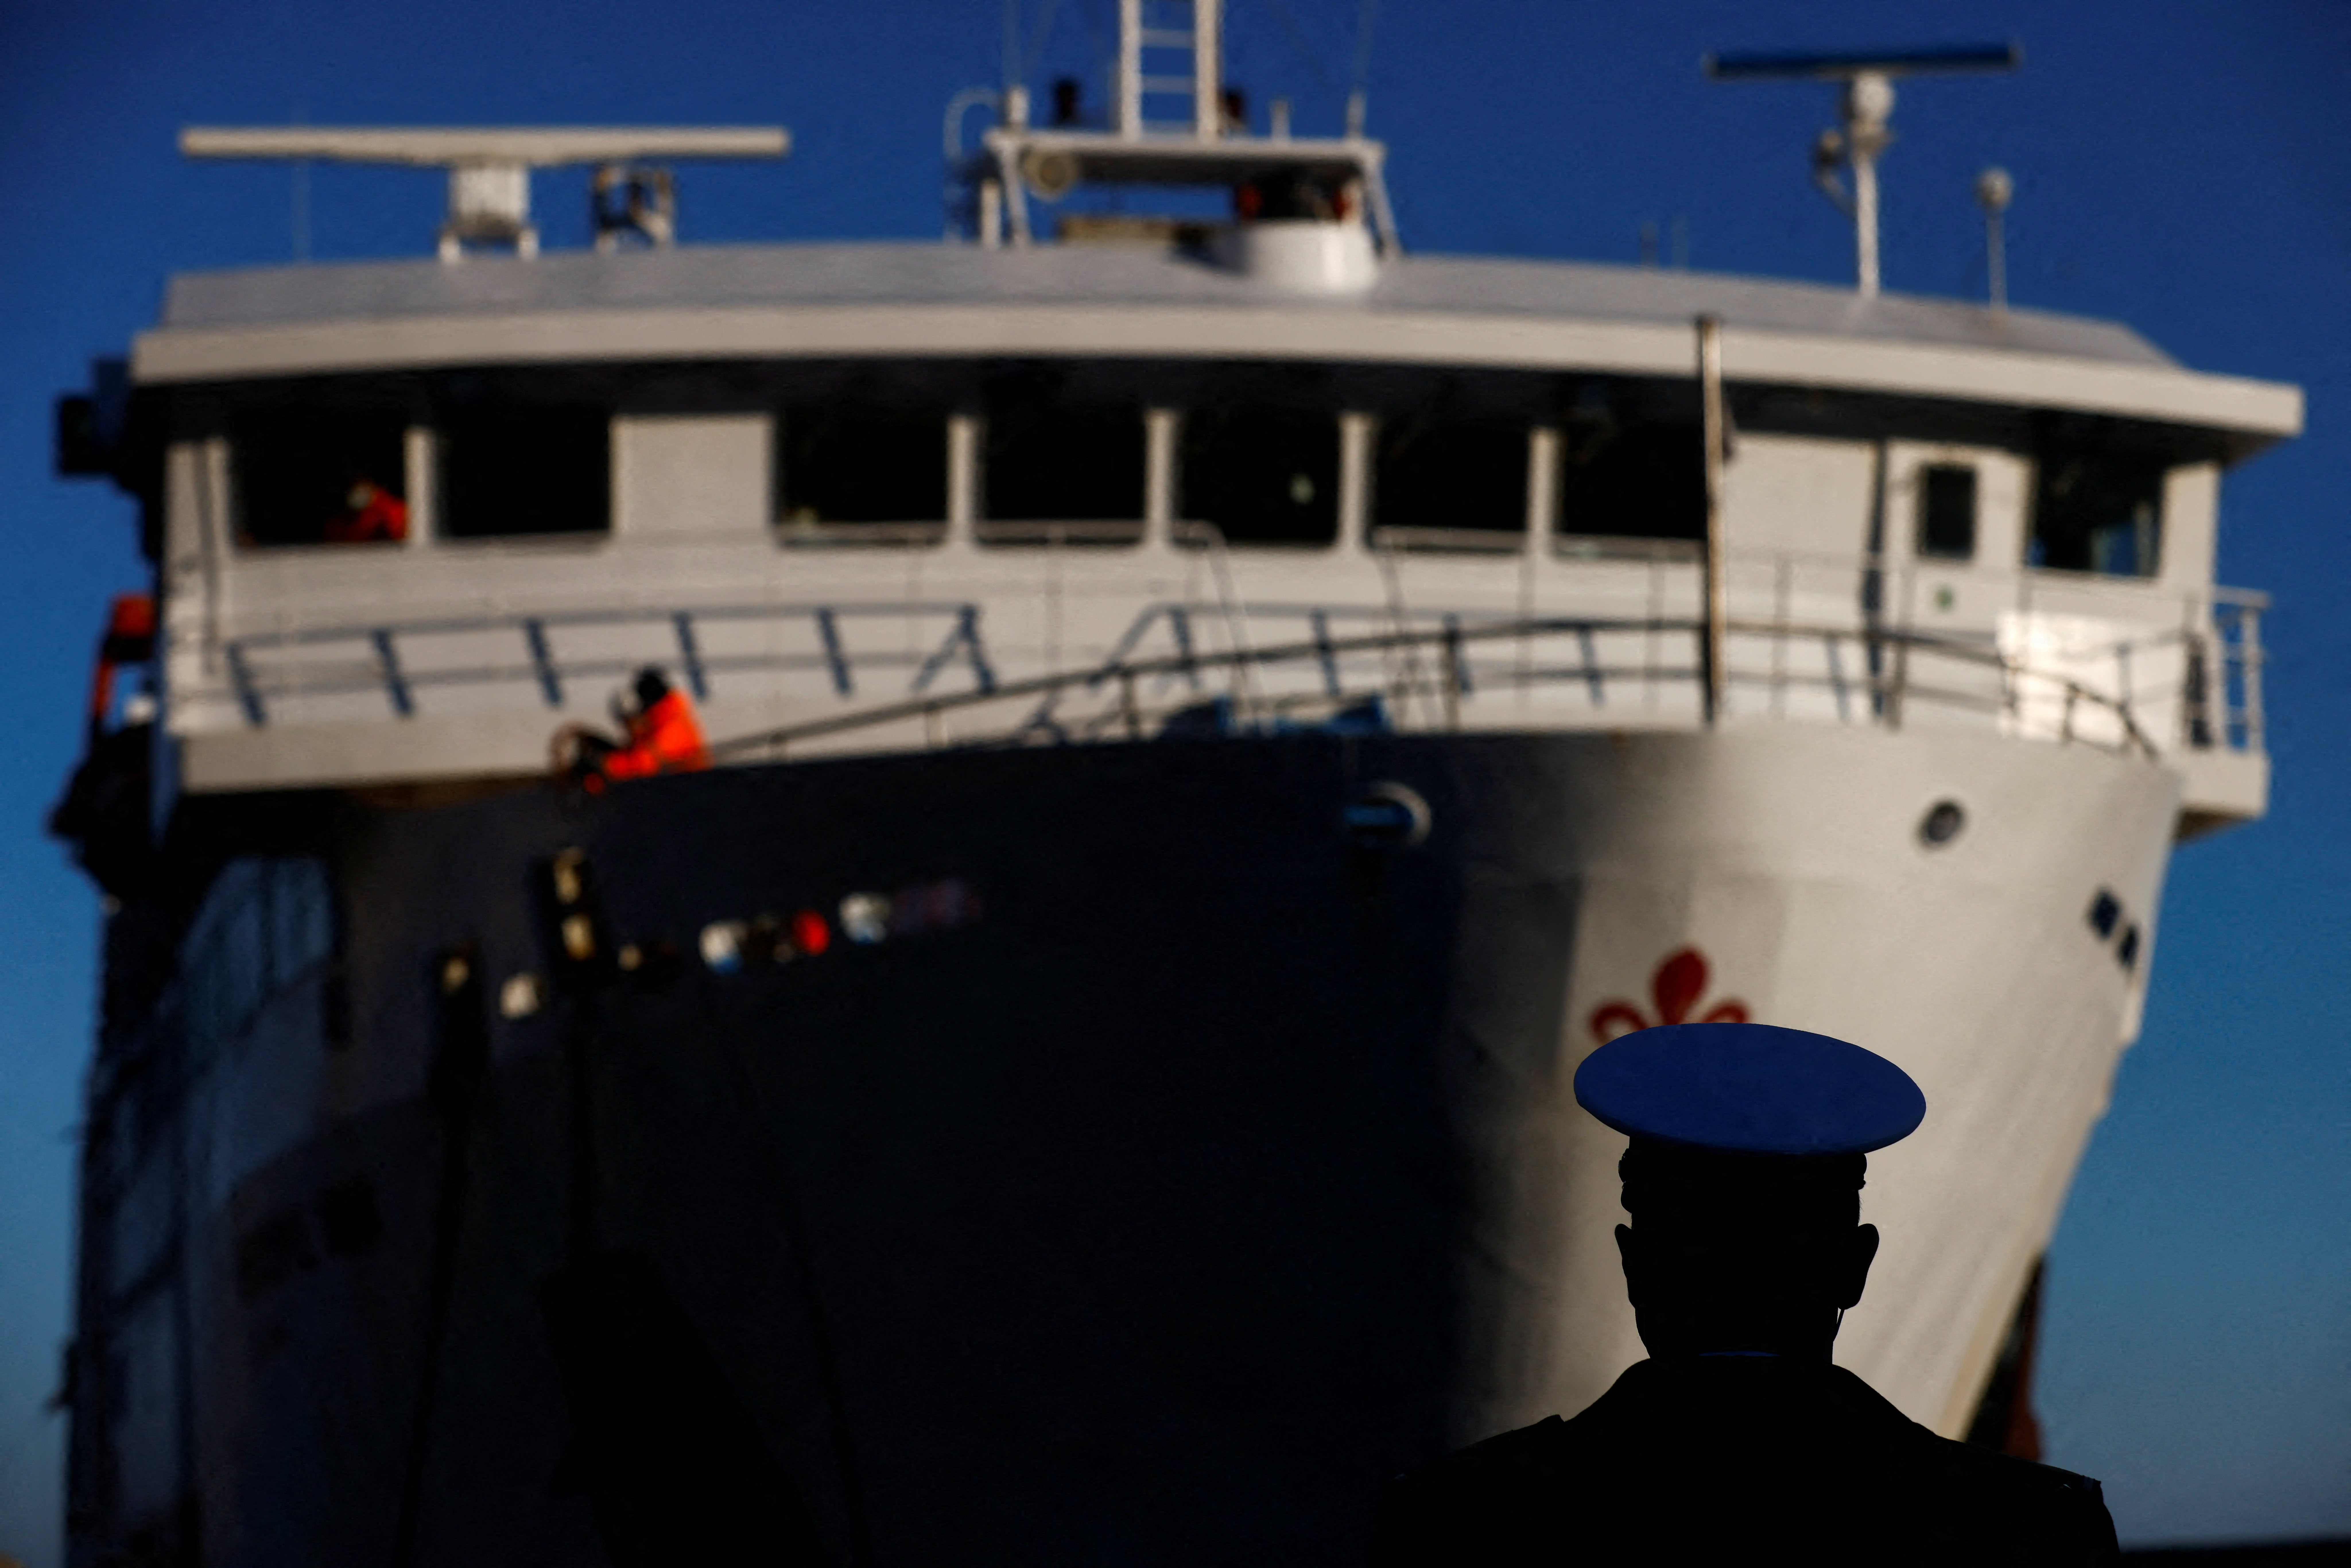 Een lid van de havenautoriteiten kijkt toe hoe een veerboot aankomt op een dag van de tiende verjaardag van het schipbreuk van de Costa Concordia waarbij 32 mensen omkwamen nadat het kapseisde en voor de kust zonk, op het eiland Giglio, Italië, 13 januari 2022. REUTERS/Yara Nardi